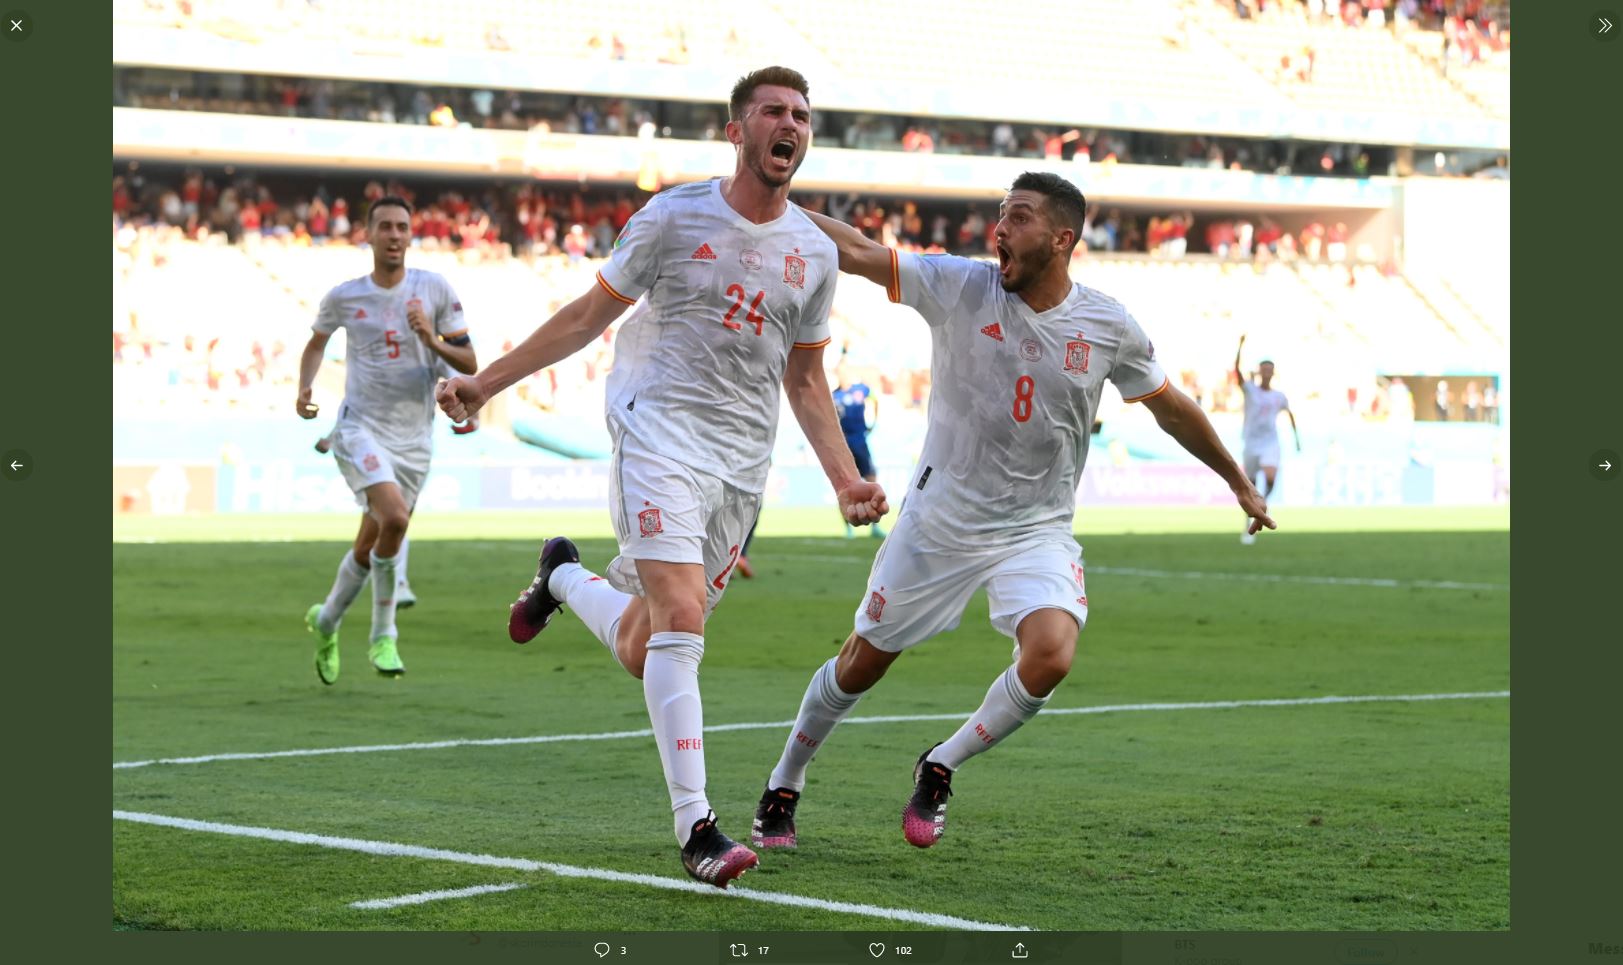 VIDEO: Kebahagiaan Aymeric Laporte setelah Cetak Gol untuk Timnas Spanyol